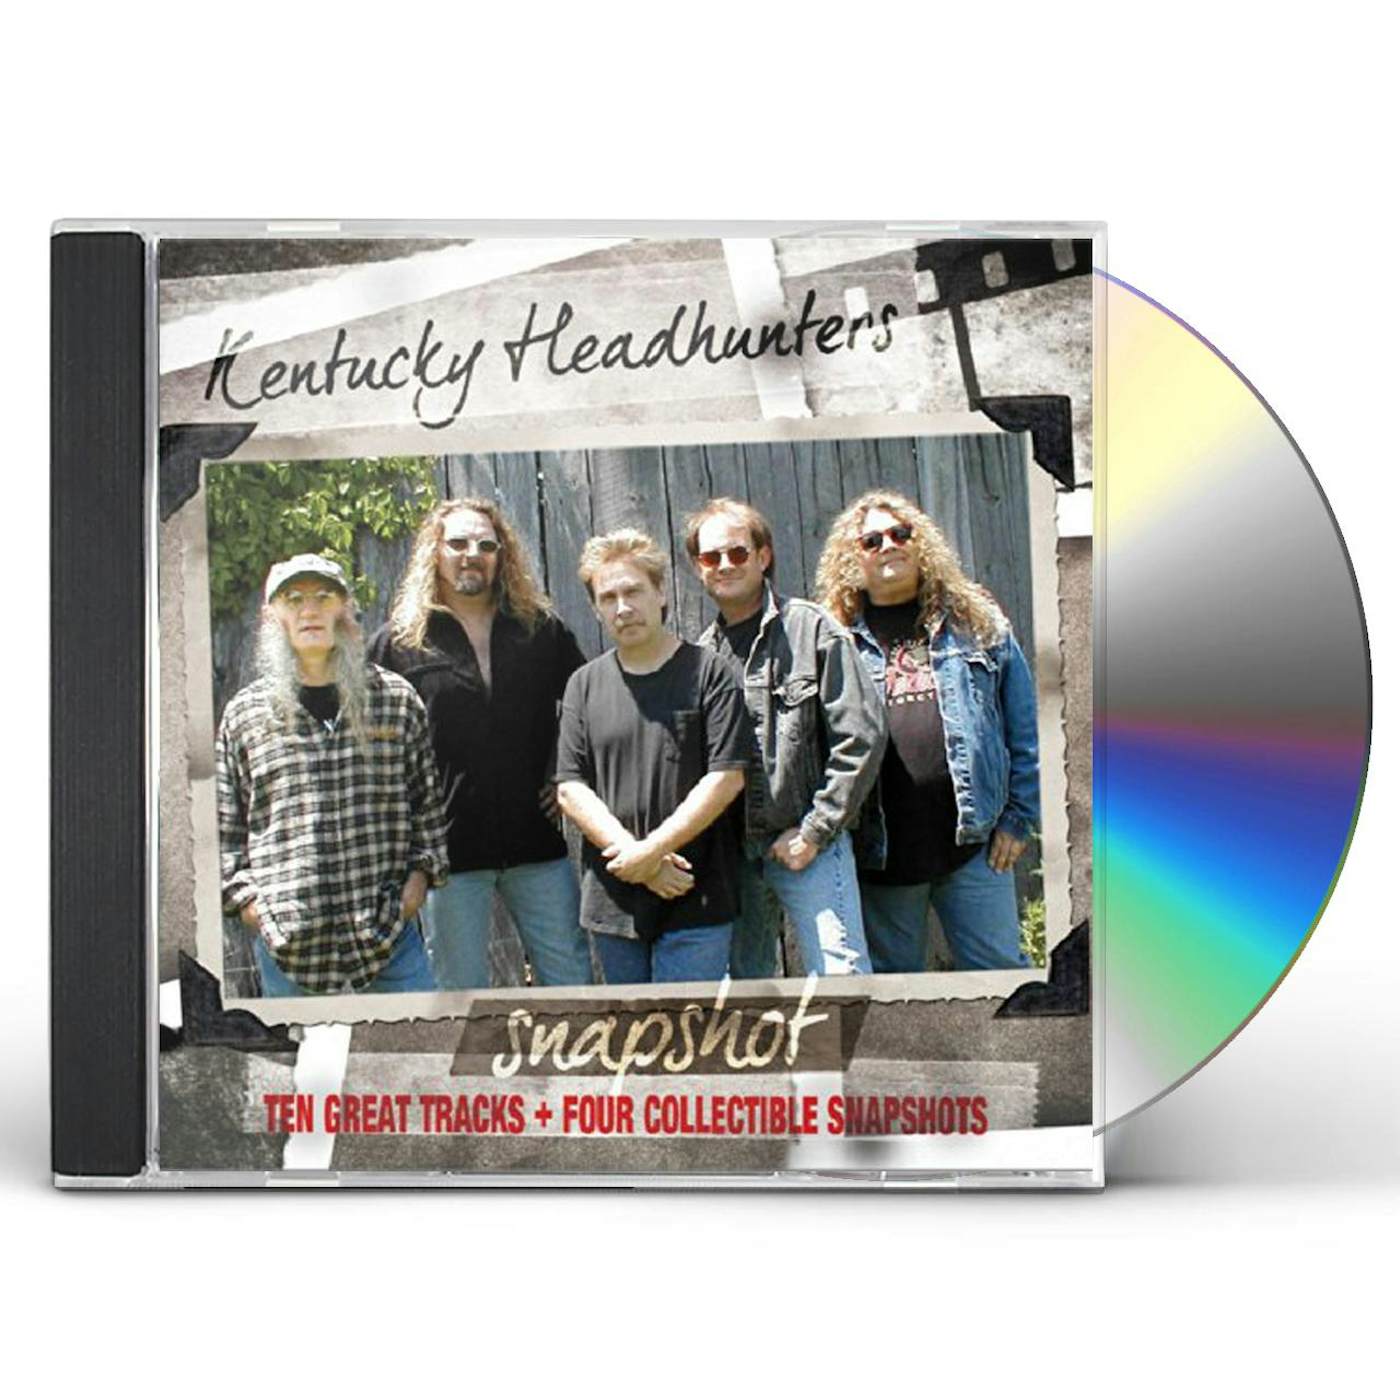 SNAPSHOT: The Kentucky Headhunters CD